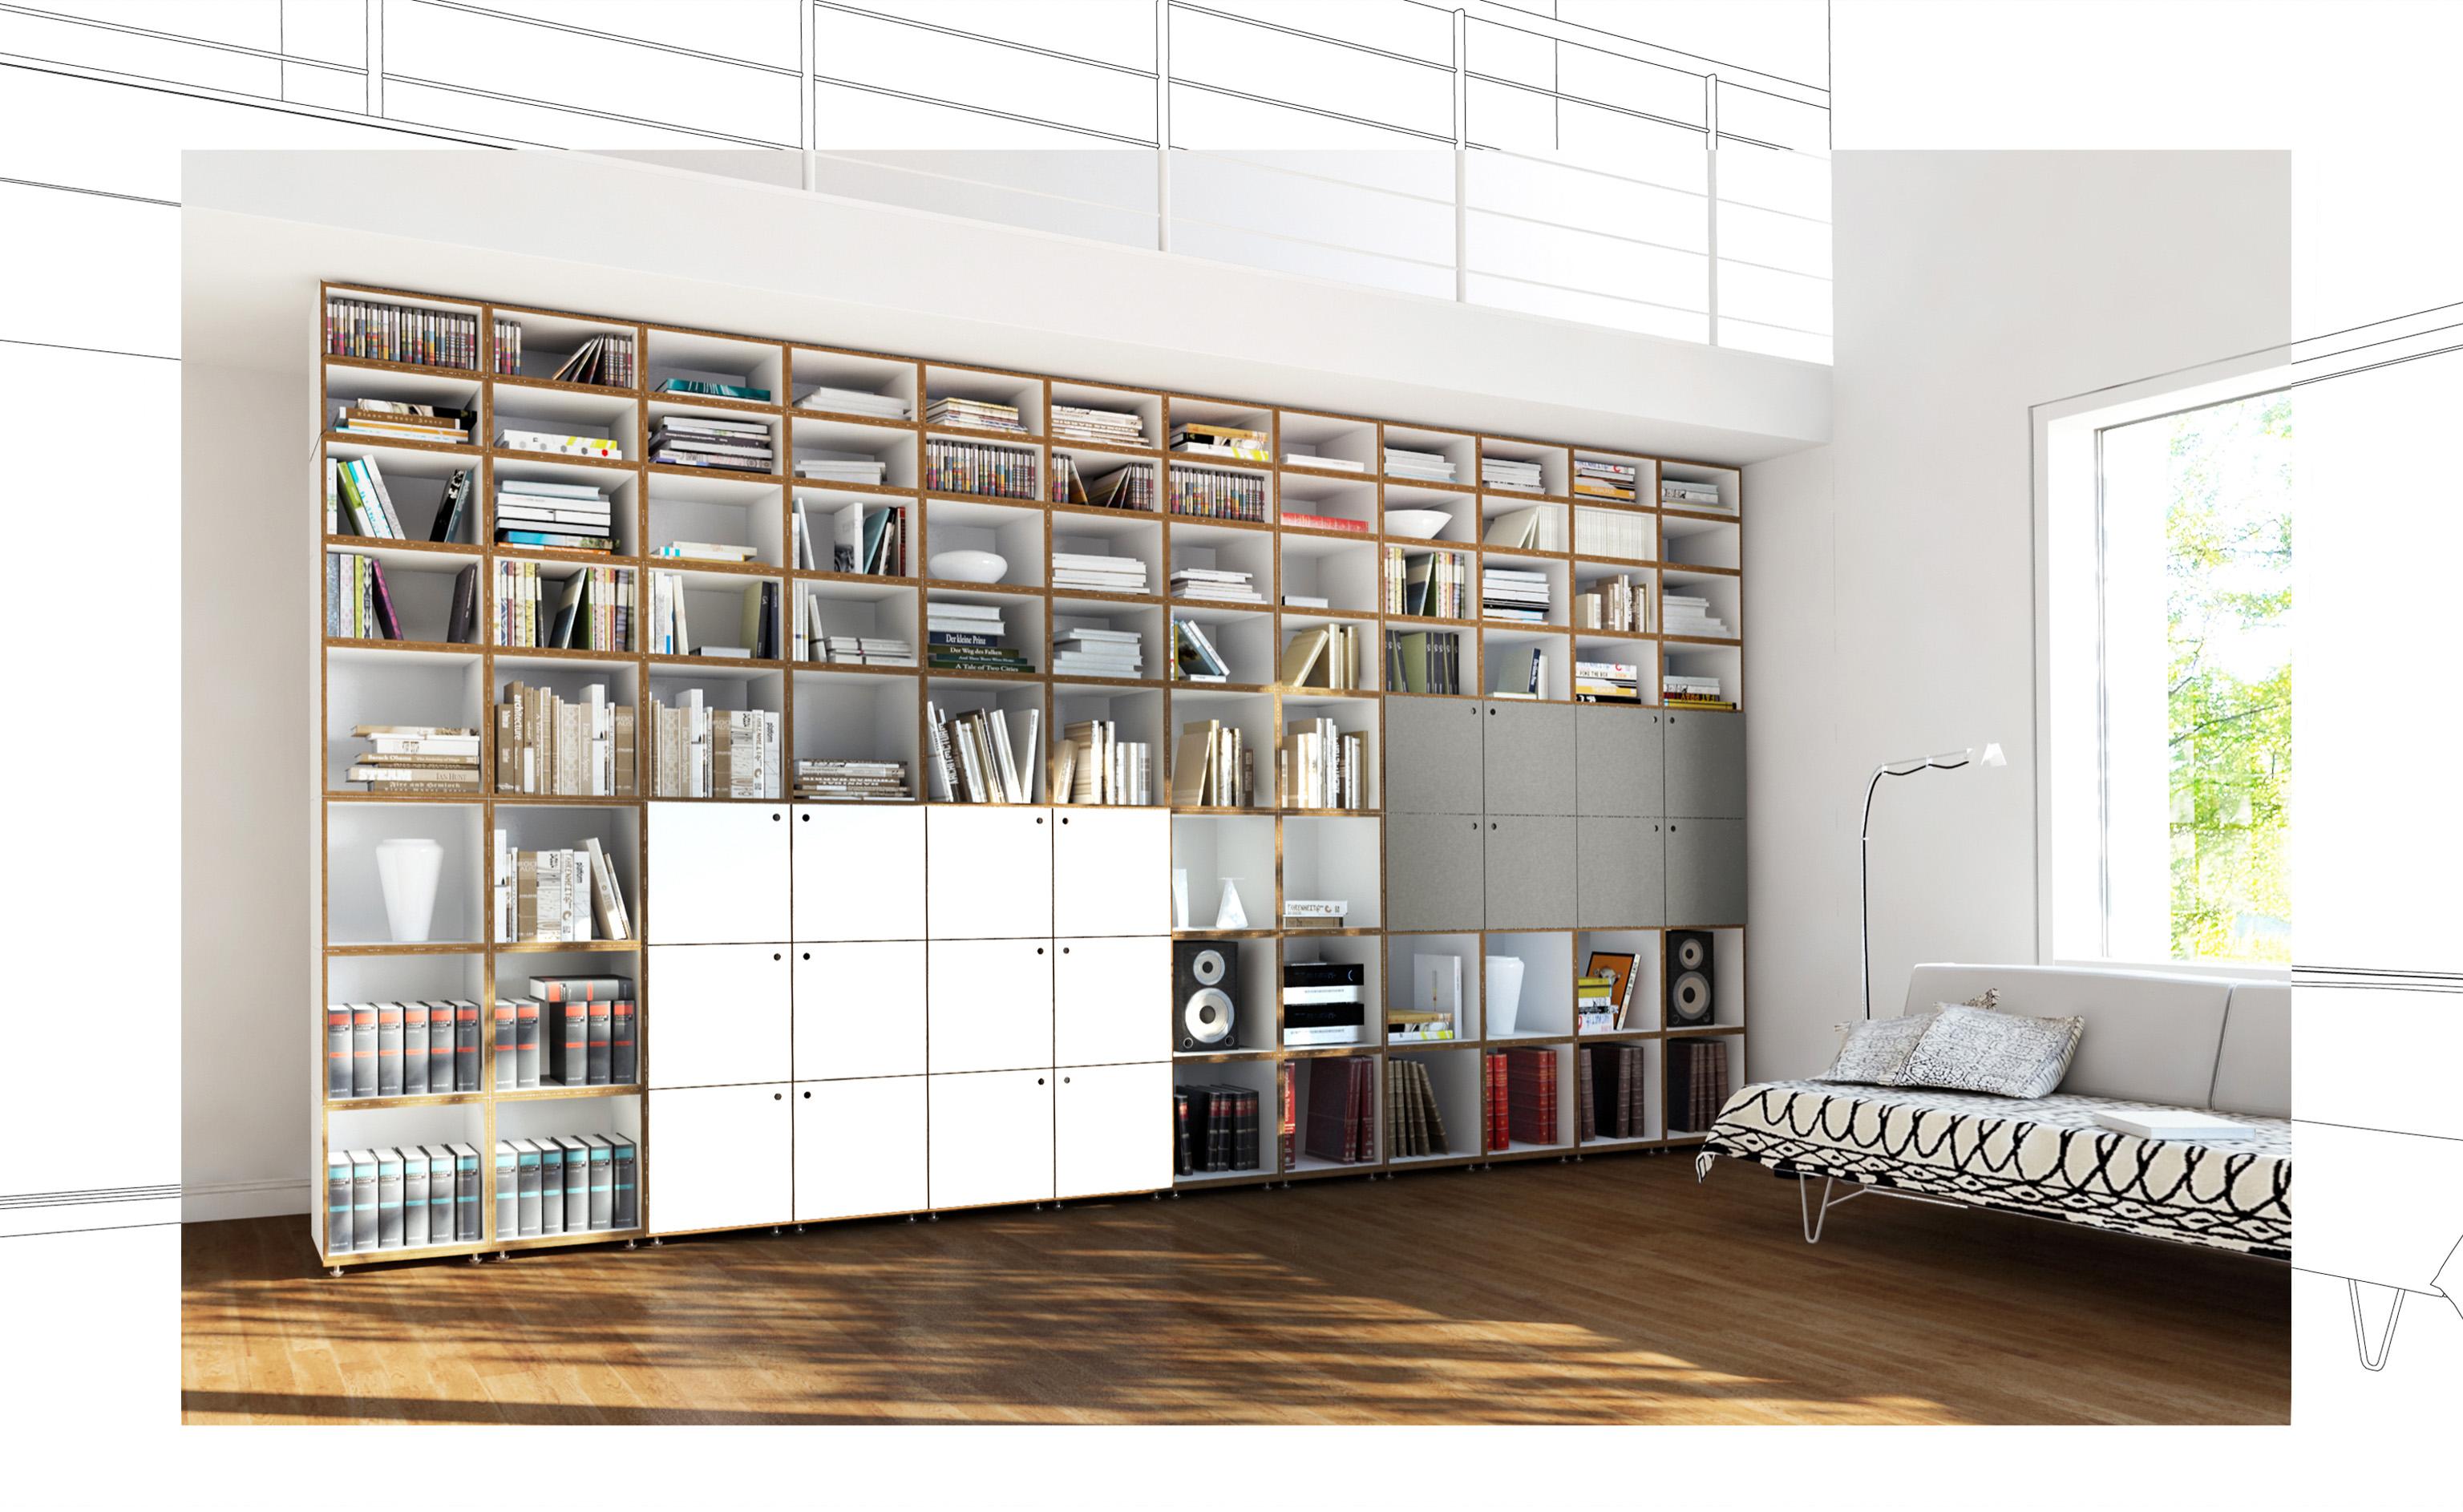 Moduales Bücherregal mit Türen #bücherregal #regalsystem #wohnzimmerregal ©stocubo GmbH